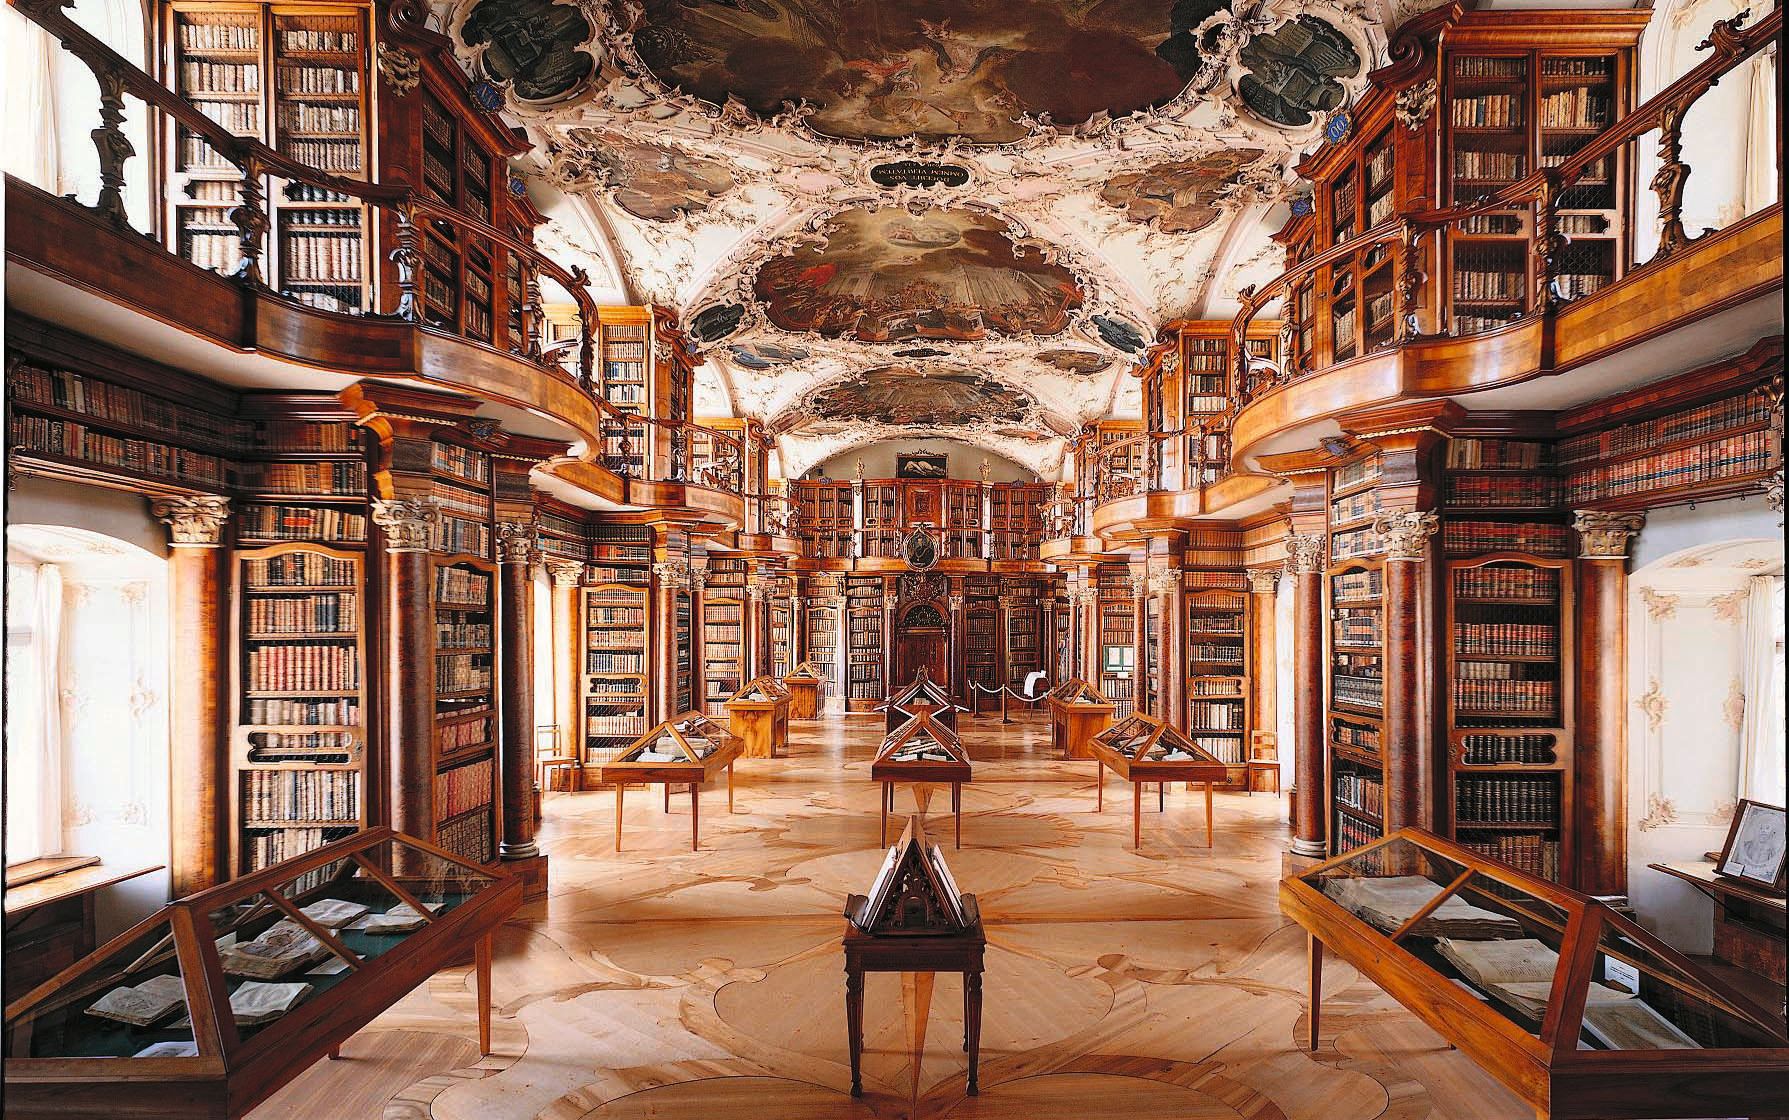 Bibliothèque du Couvent de St-Gall, objet A de l’inventaire PBC, Patrimoine mondial de l’UNESCO et candidat pour protection renforcée 